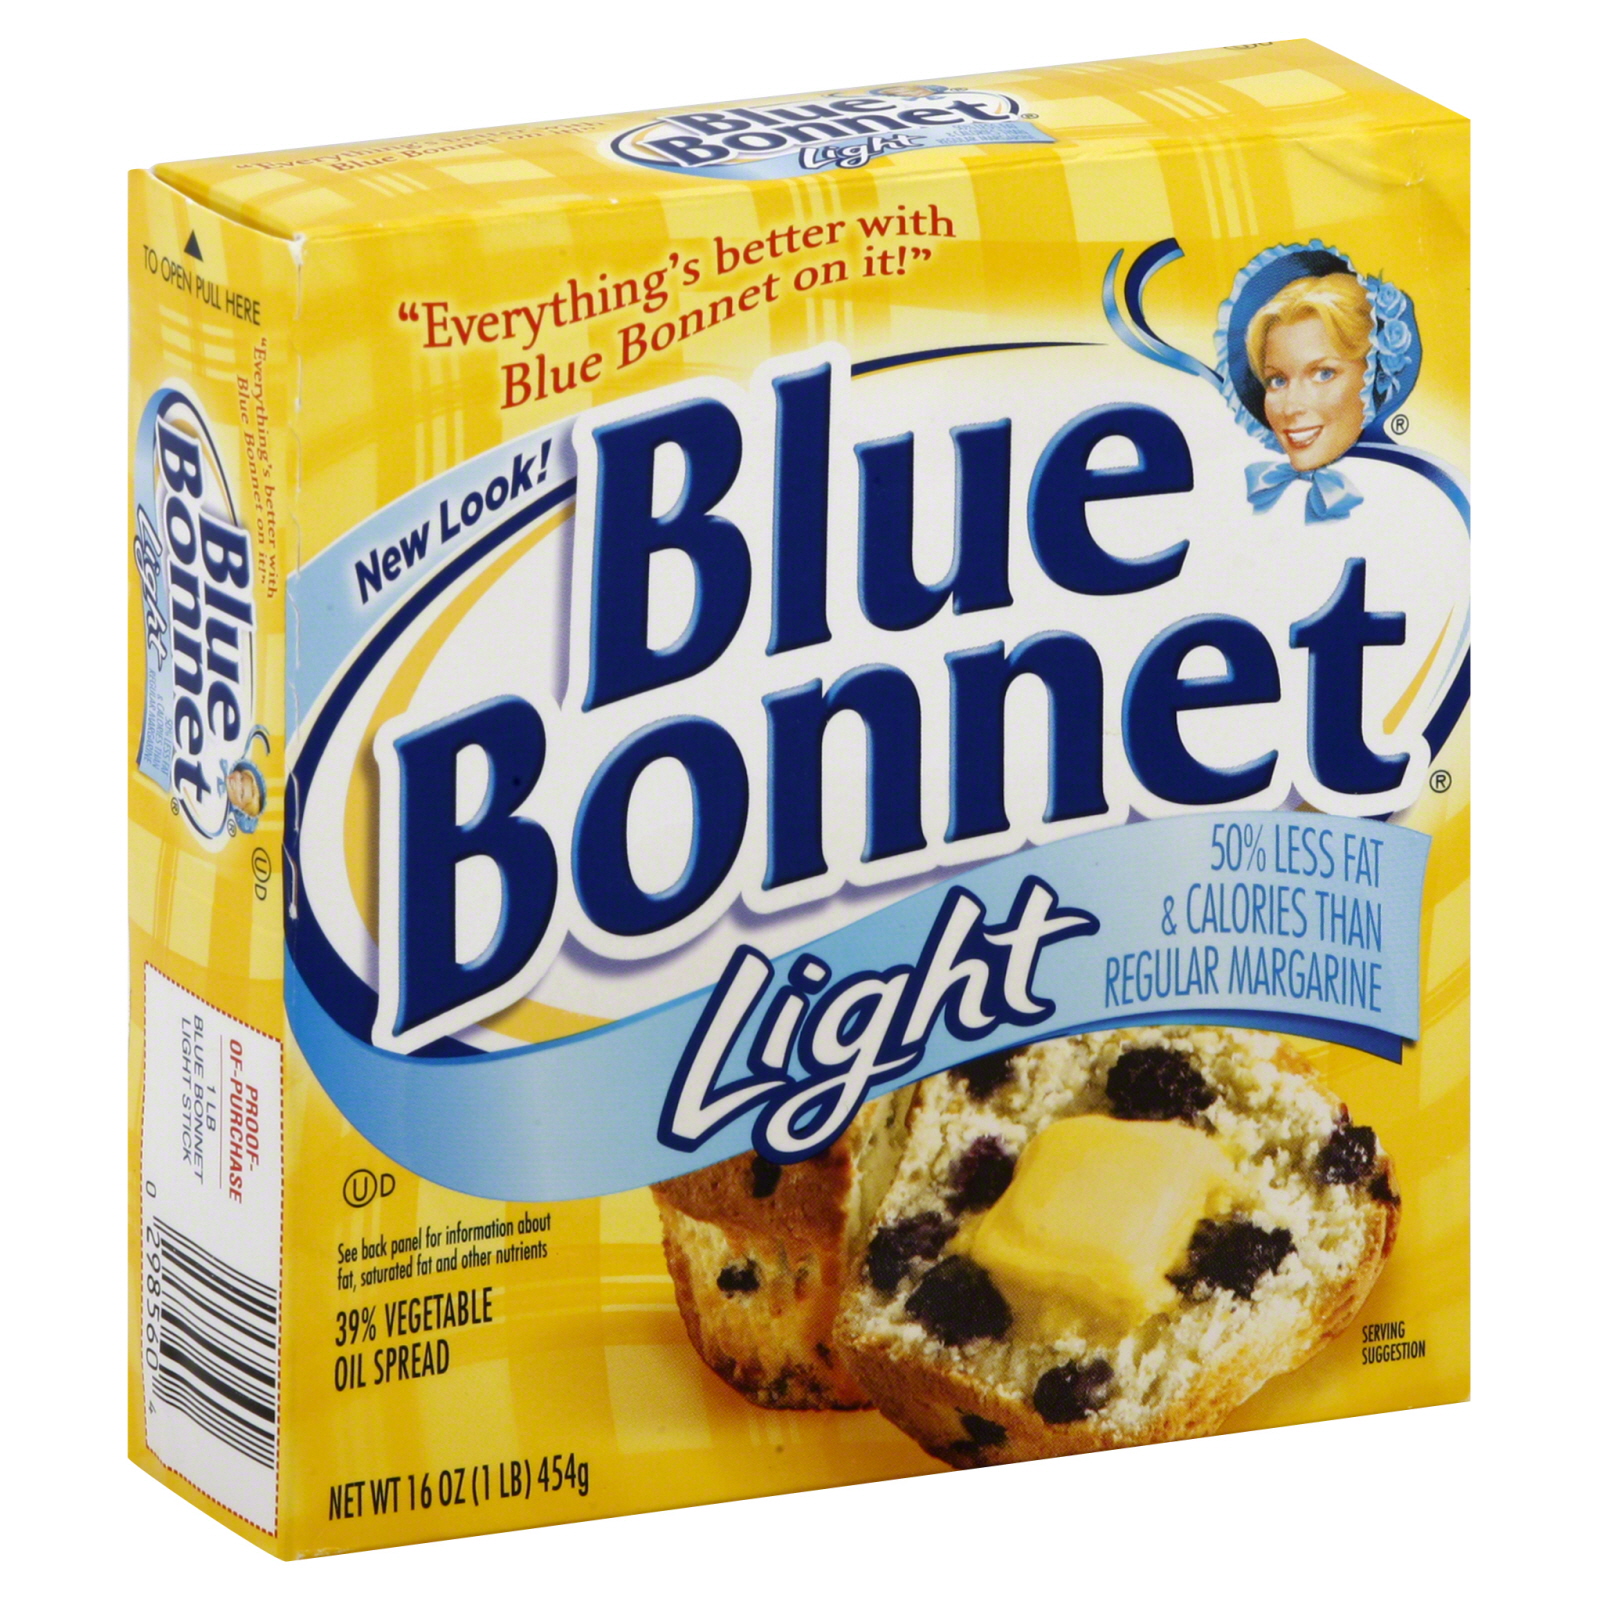 Blue Bonnet Light Vegetable Oil Spread, 31%, 16 oz (1 lb) 454 g